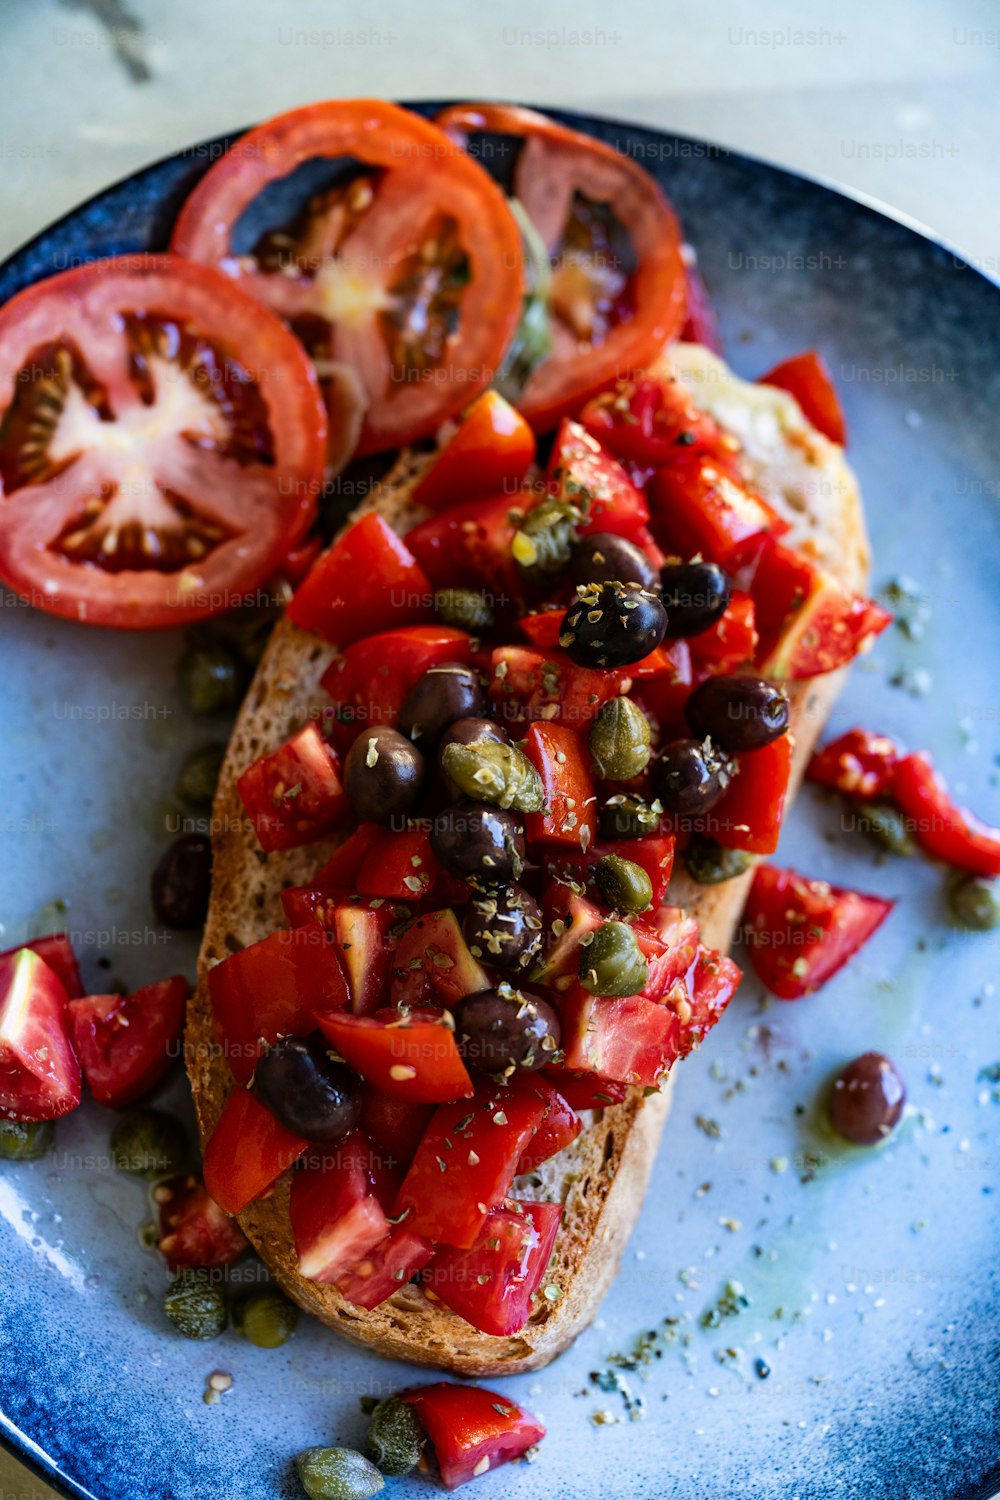 un piatto blu sormontato da un pezzo di pane ricoperto di pomodori e olive